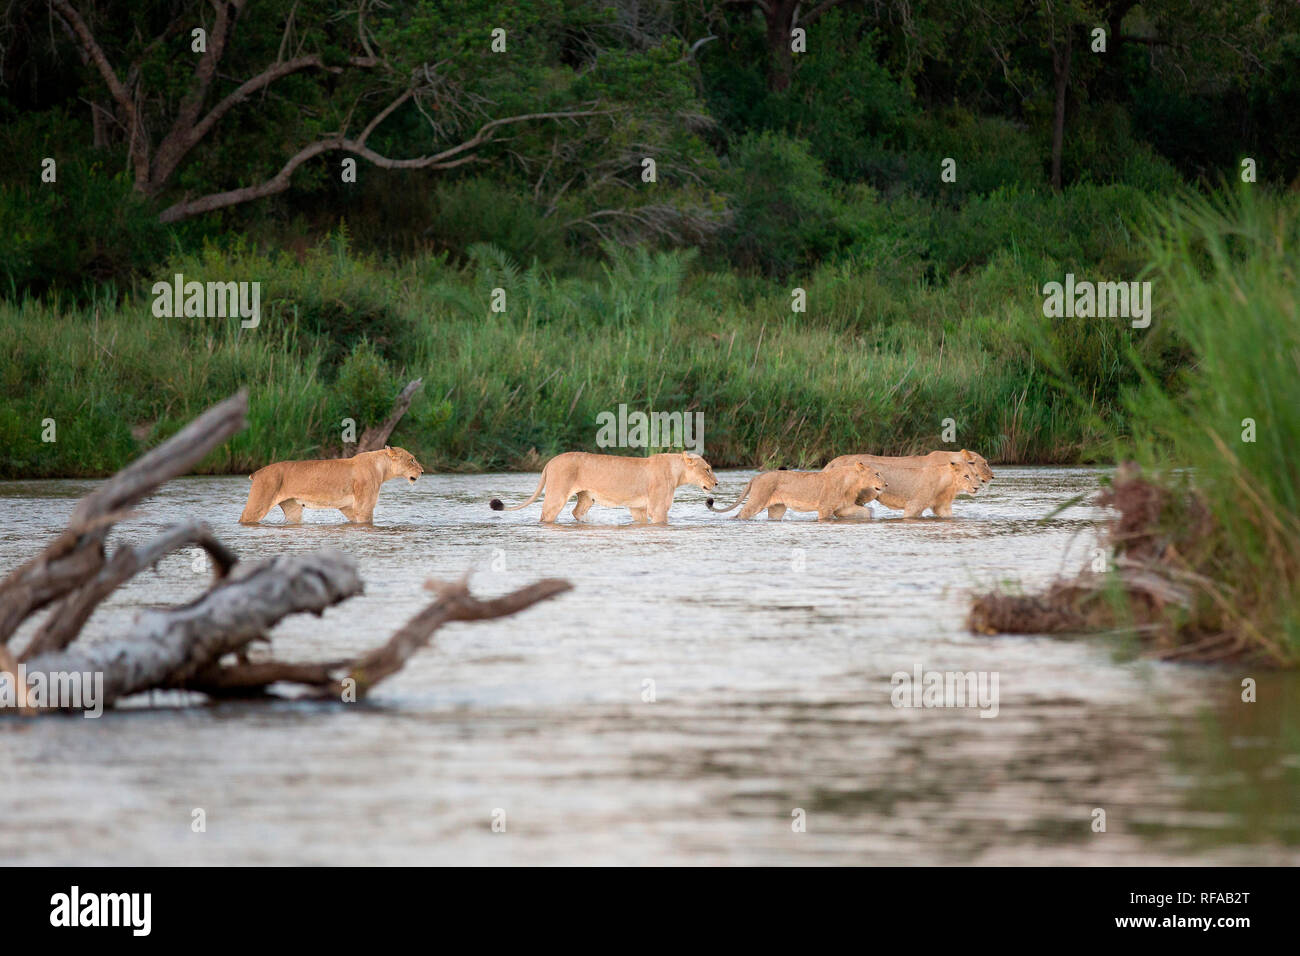 Ein Löwe stolz, Panthera leo, überqueren Sie den Fluss in einer Zeile in knietiefem Wasser, nach jedem anderen, viel Grün im Hintergrund Stockfoto